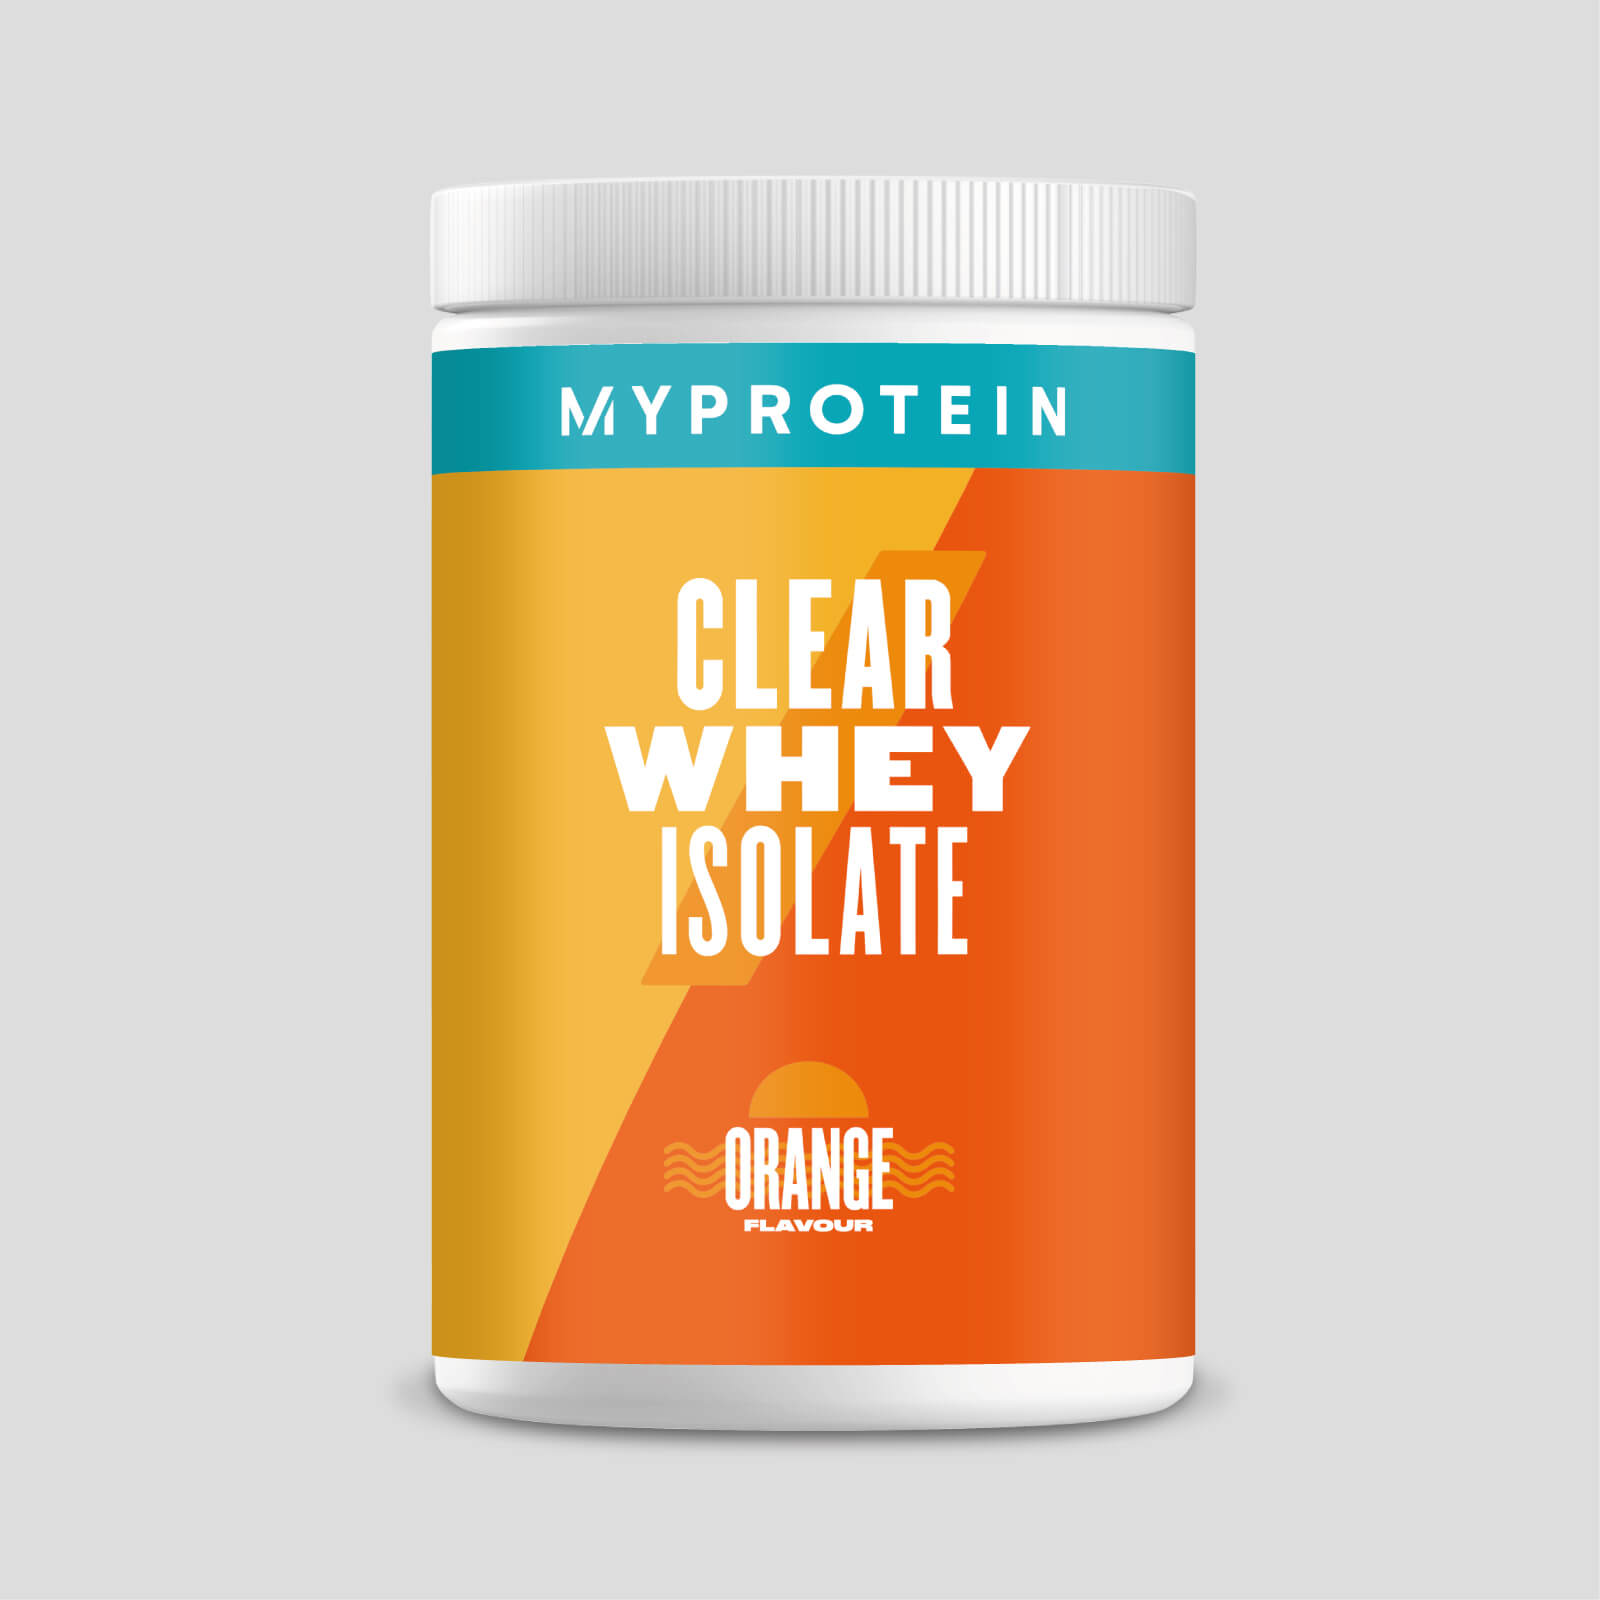 Myprotein Clear Whey Proteín - 500g - Orange - New In